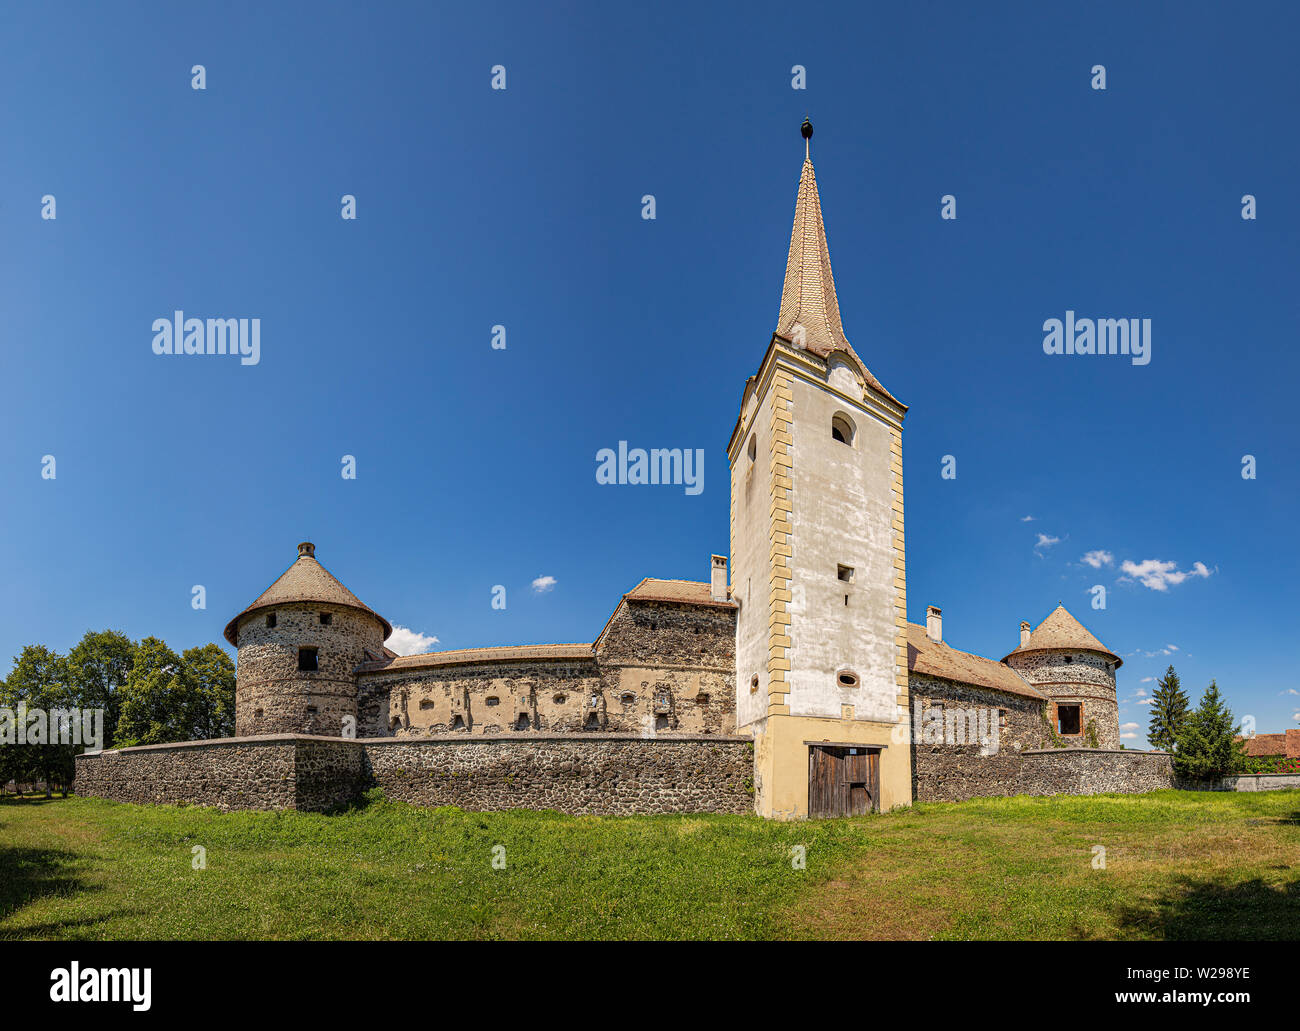 Sukosd-Bethlen castello medievale fortificato, Racos, Romania. Vista dell'ingresso principale torre. Foto Stock